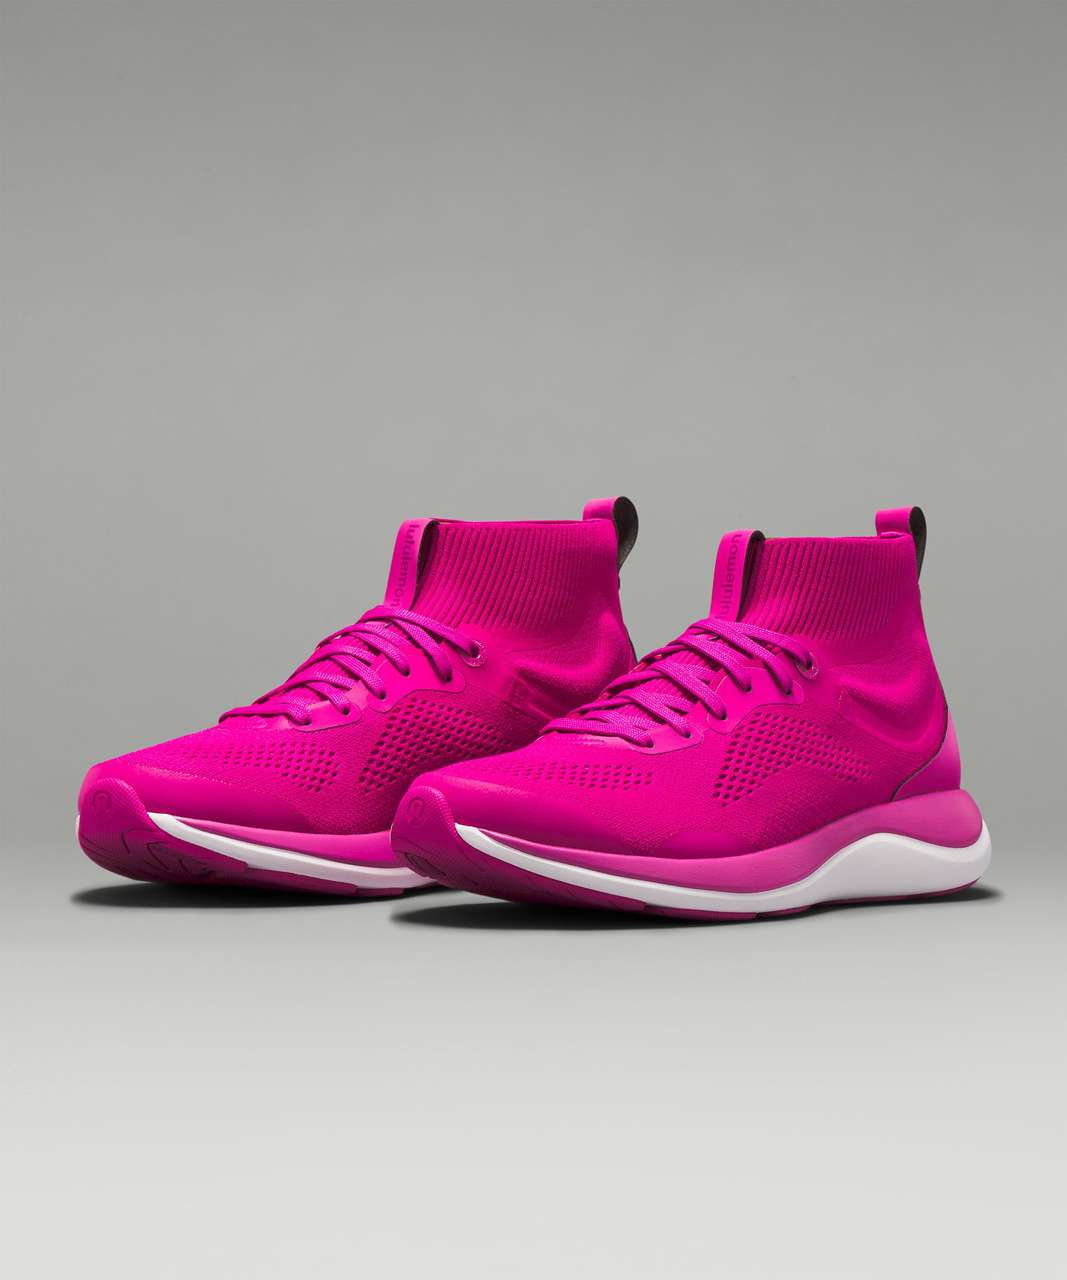 NWOB Lululemon Blissfeel Running Shoe Size 8 Pink Peony/Sunset